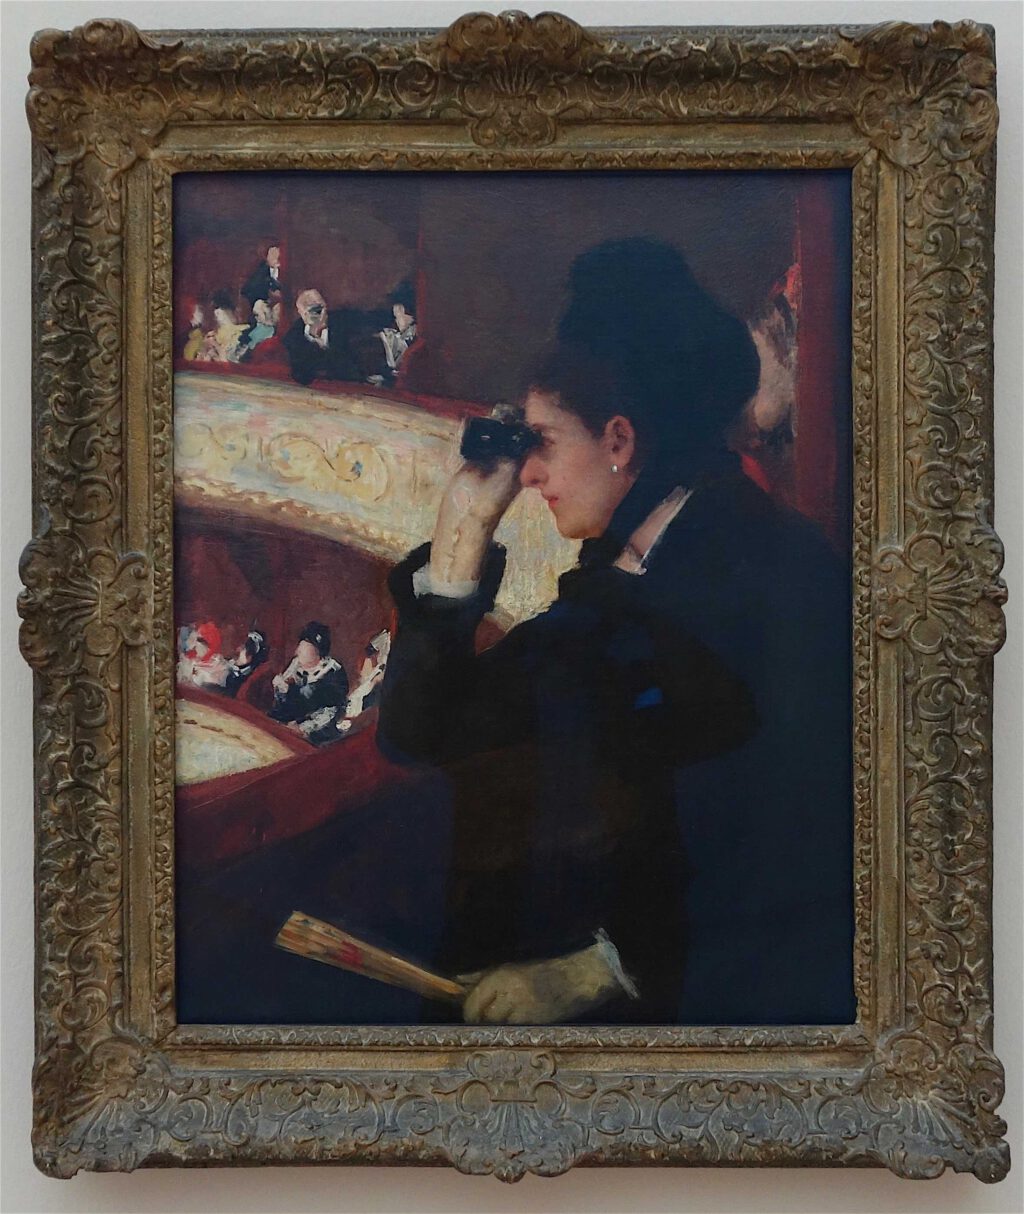 メアリー・カサット「シアターボックス内」油絵、81.3 x 66 センチ、1878年 (Museum of Fine Arts, Boston)